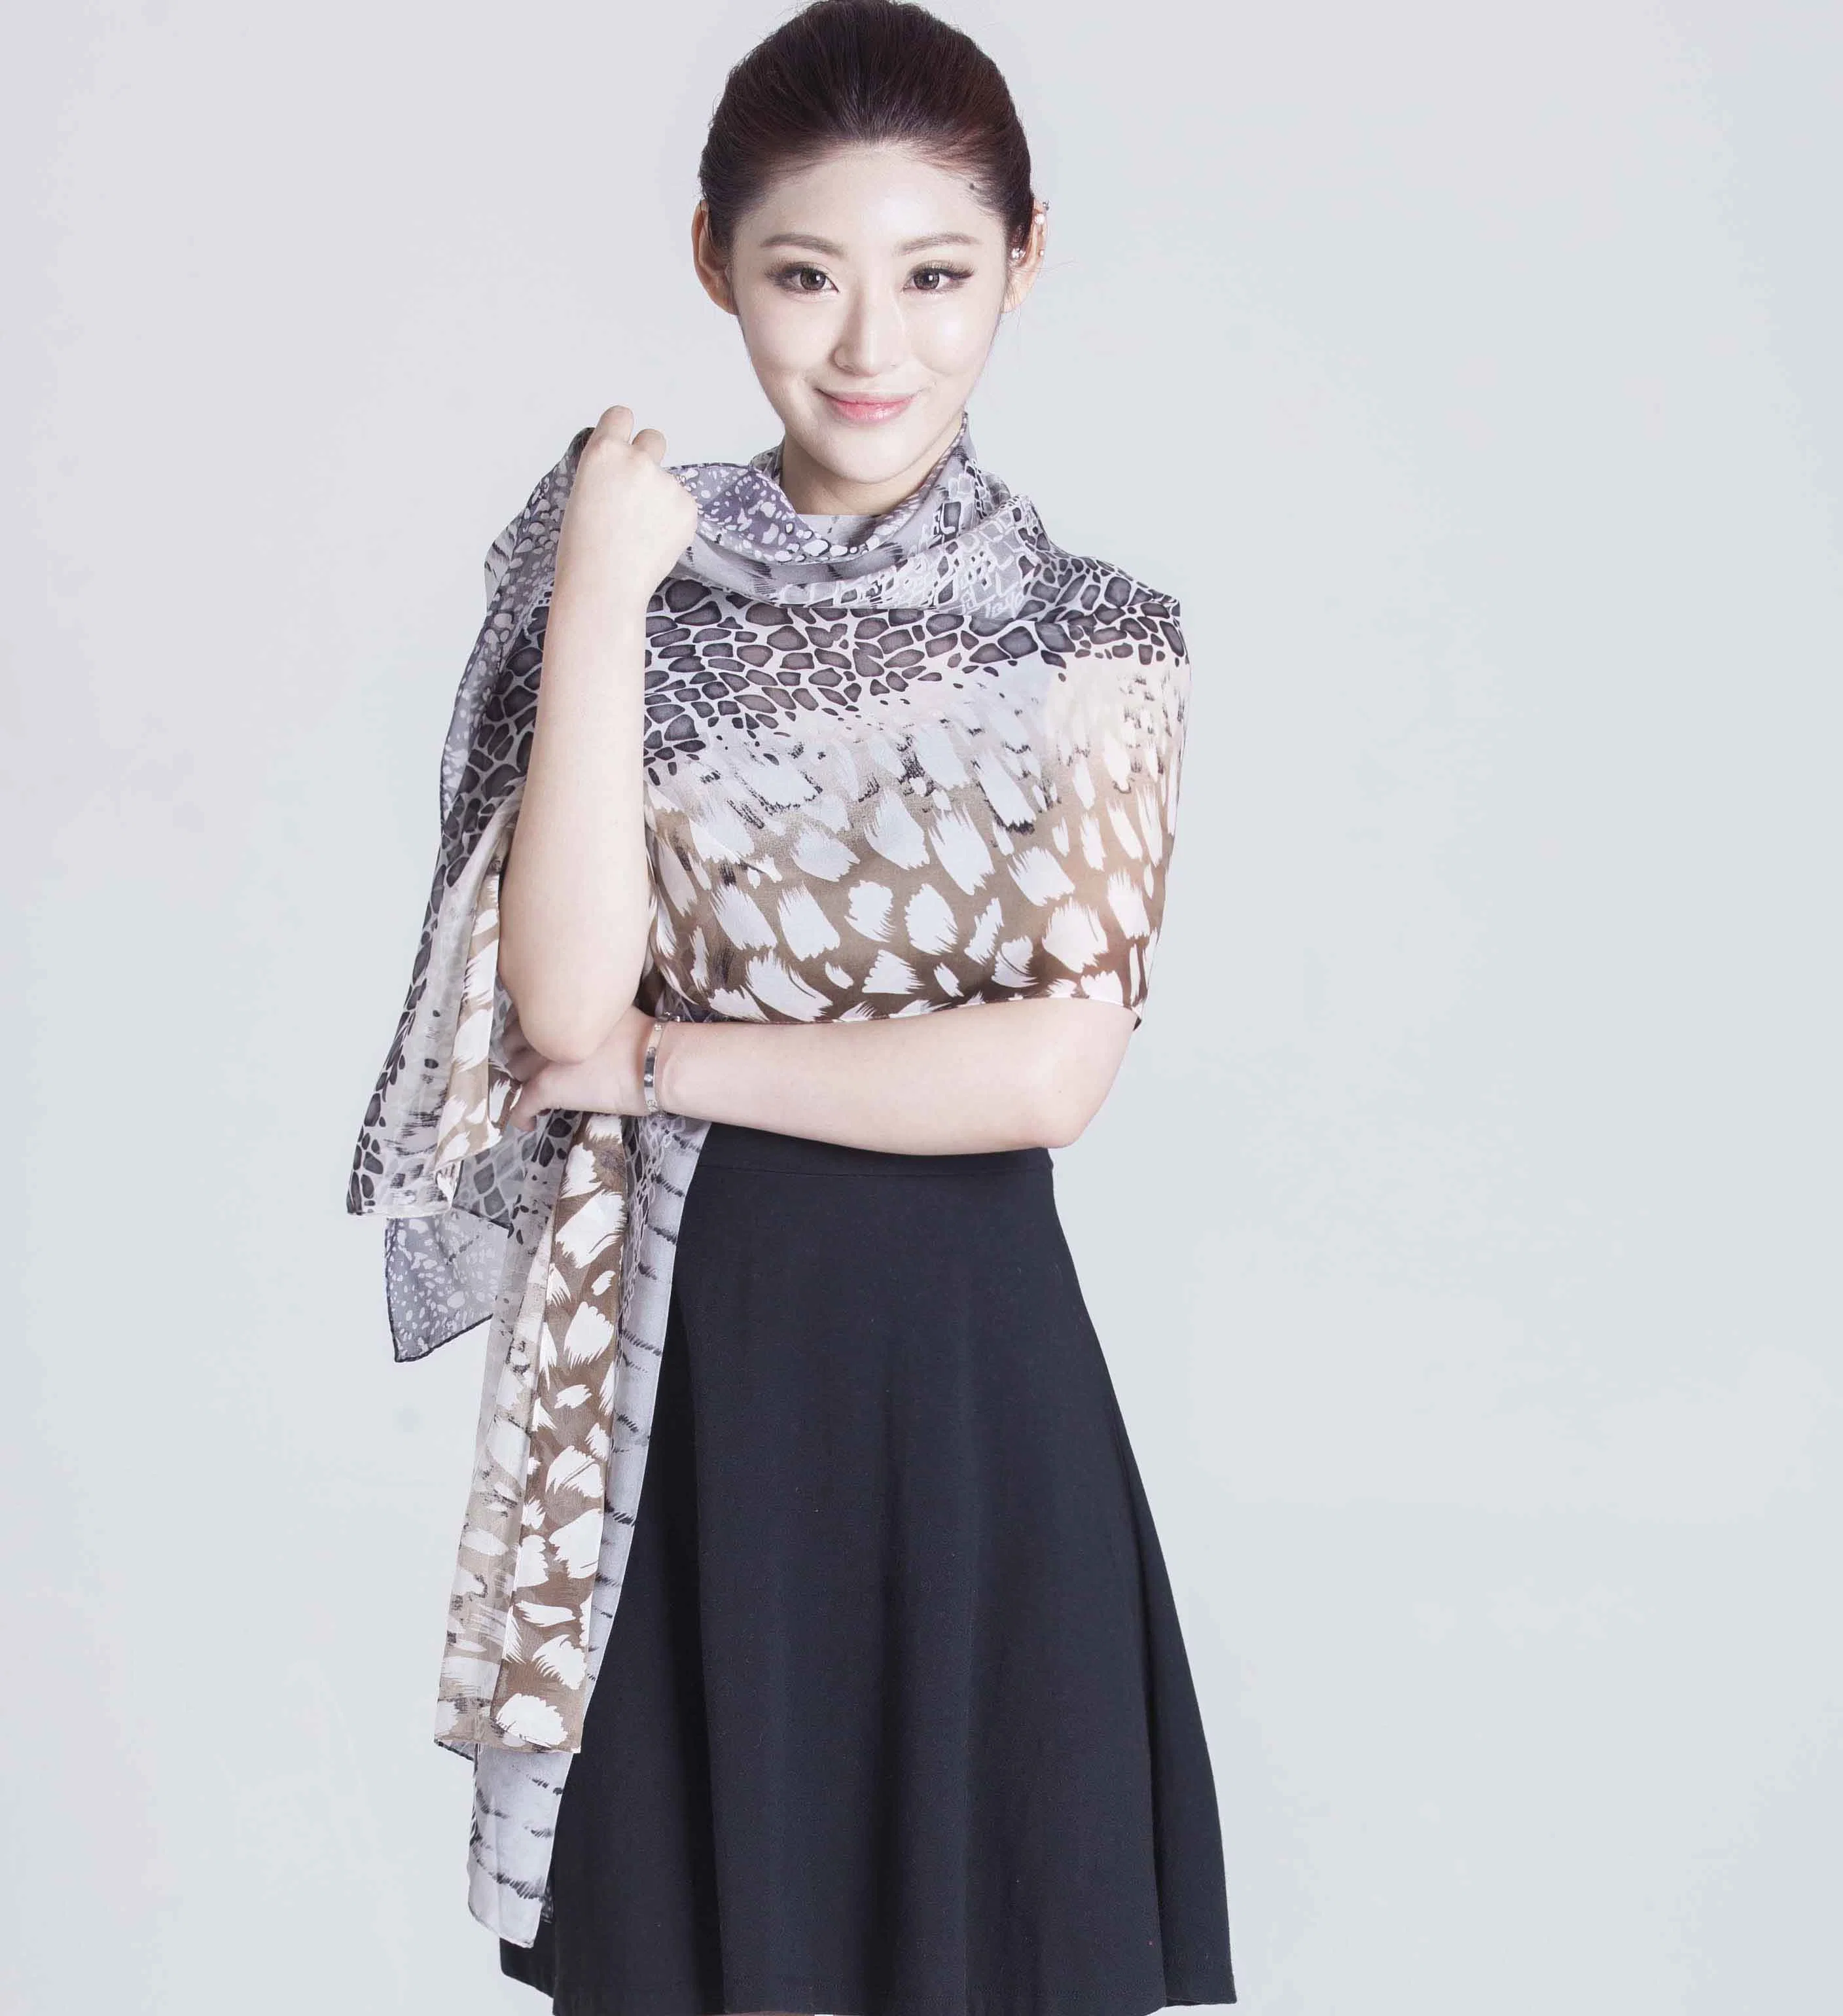 Custom Digital Printed 100% Silk Chiffon Scarf for Fashion Ladies Apparel Accessories